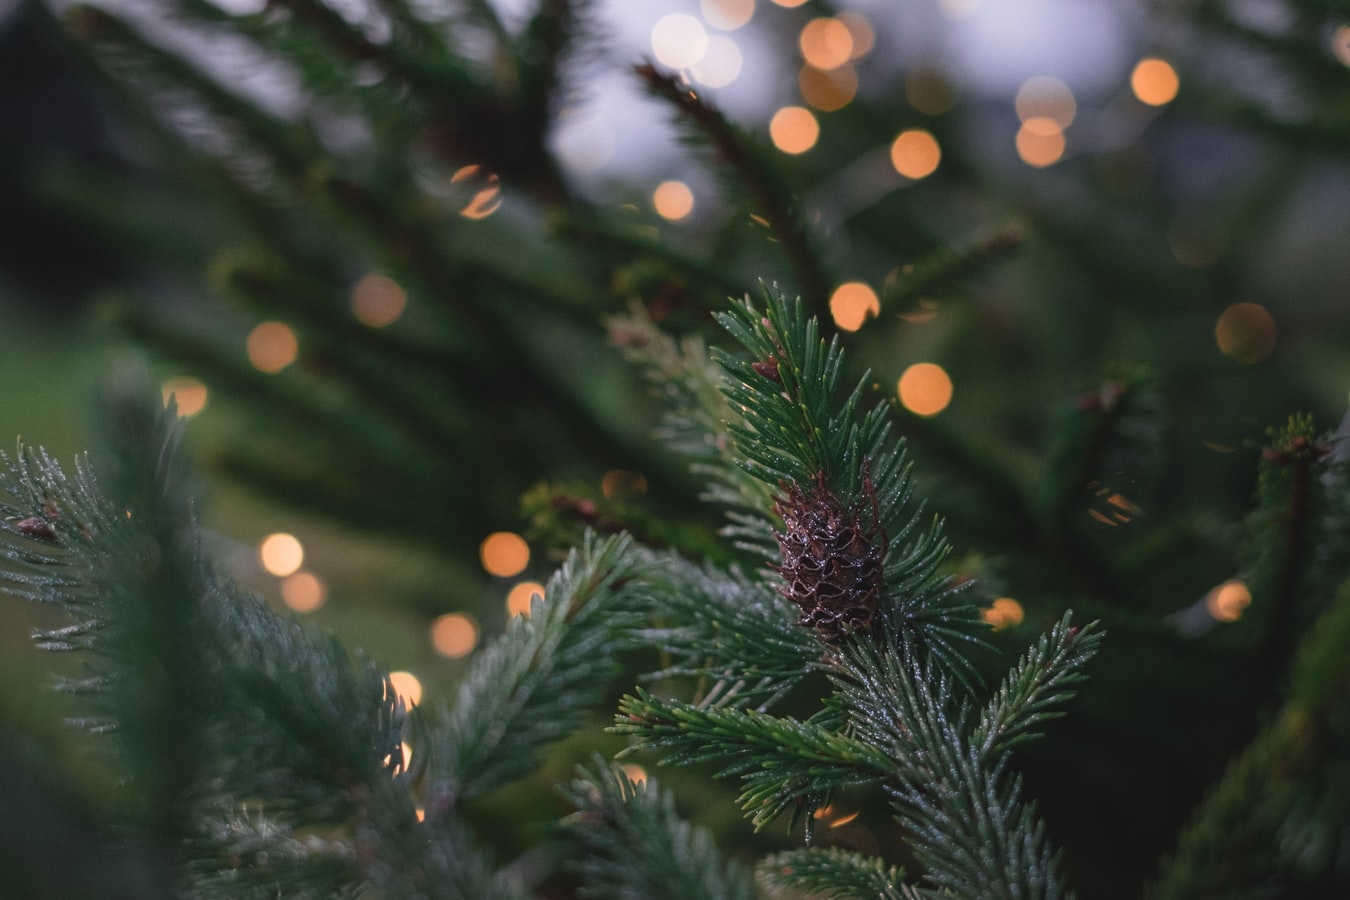 Χριστουγεννιάτικο δέντρο Σύνταγμα 2019: Έφτασε από το Καρπενήσι και… μας περιμένει